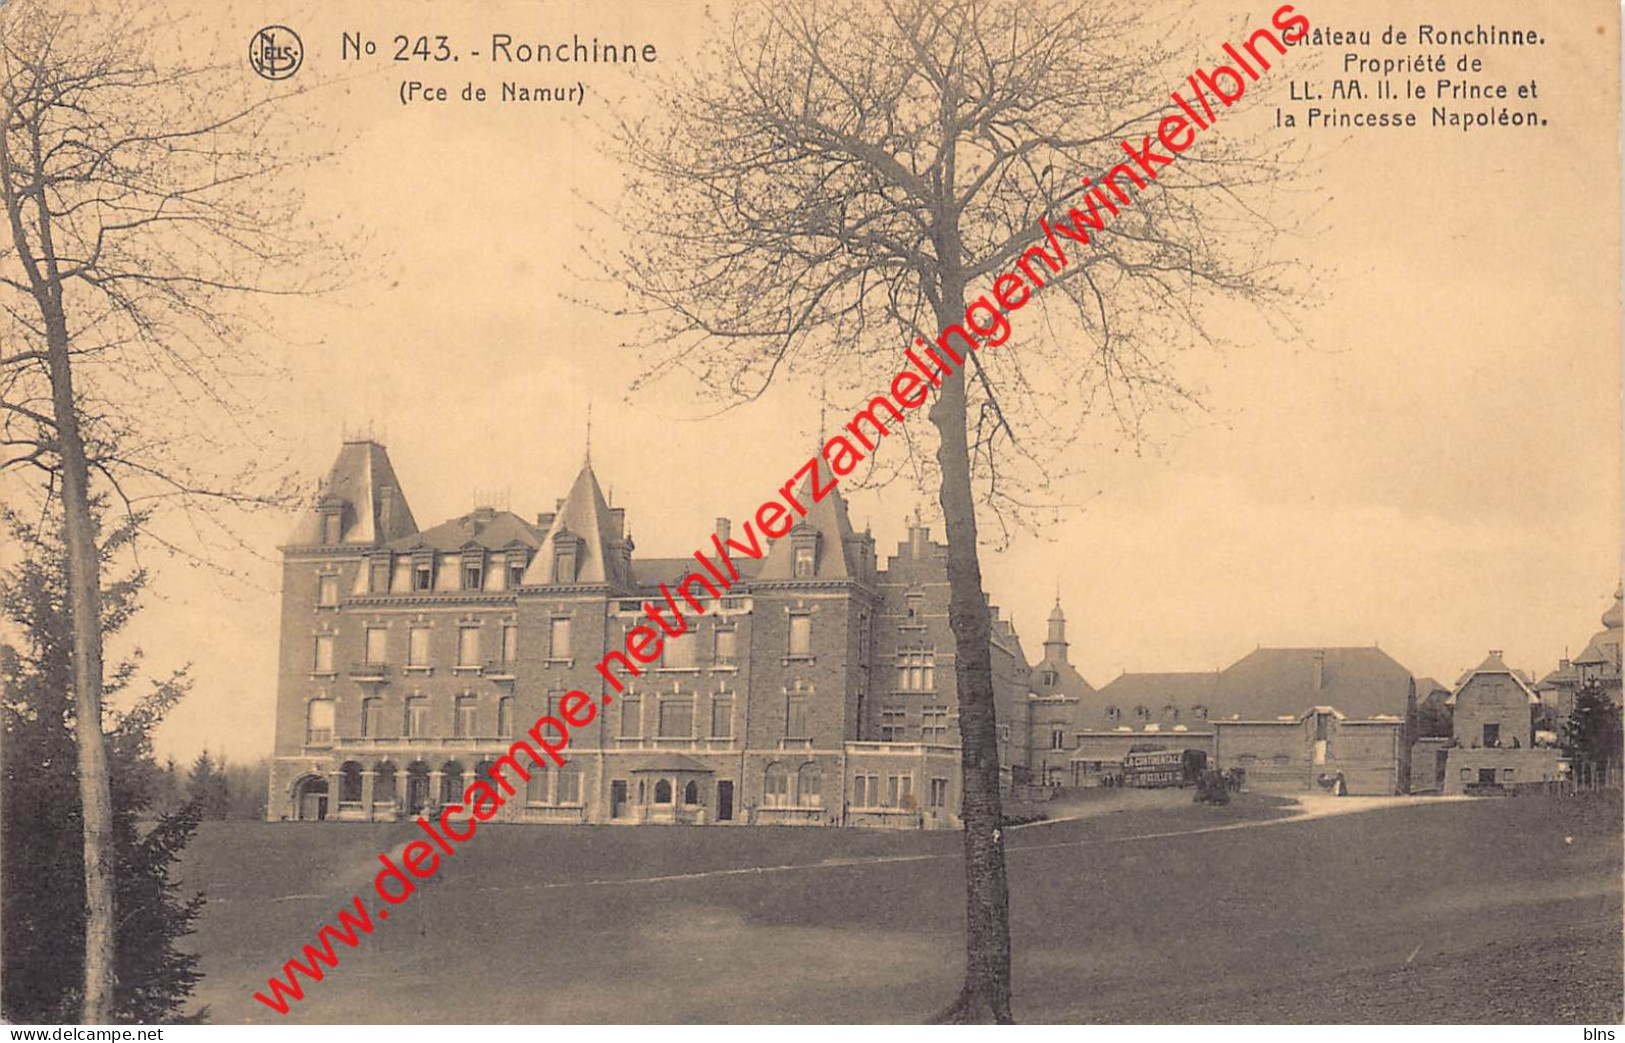 Château De Ronchinne Du Prince Et La Princesse Napoléon - Ronchinne - Maillen - Assesse